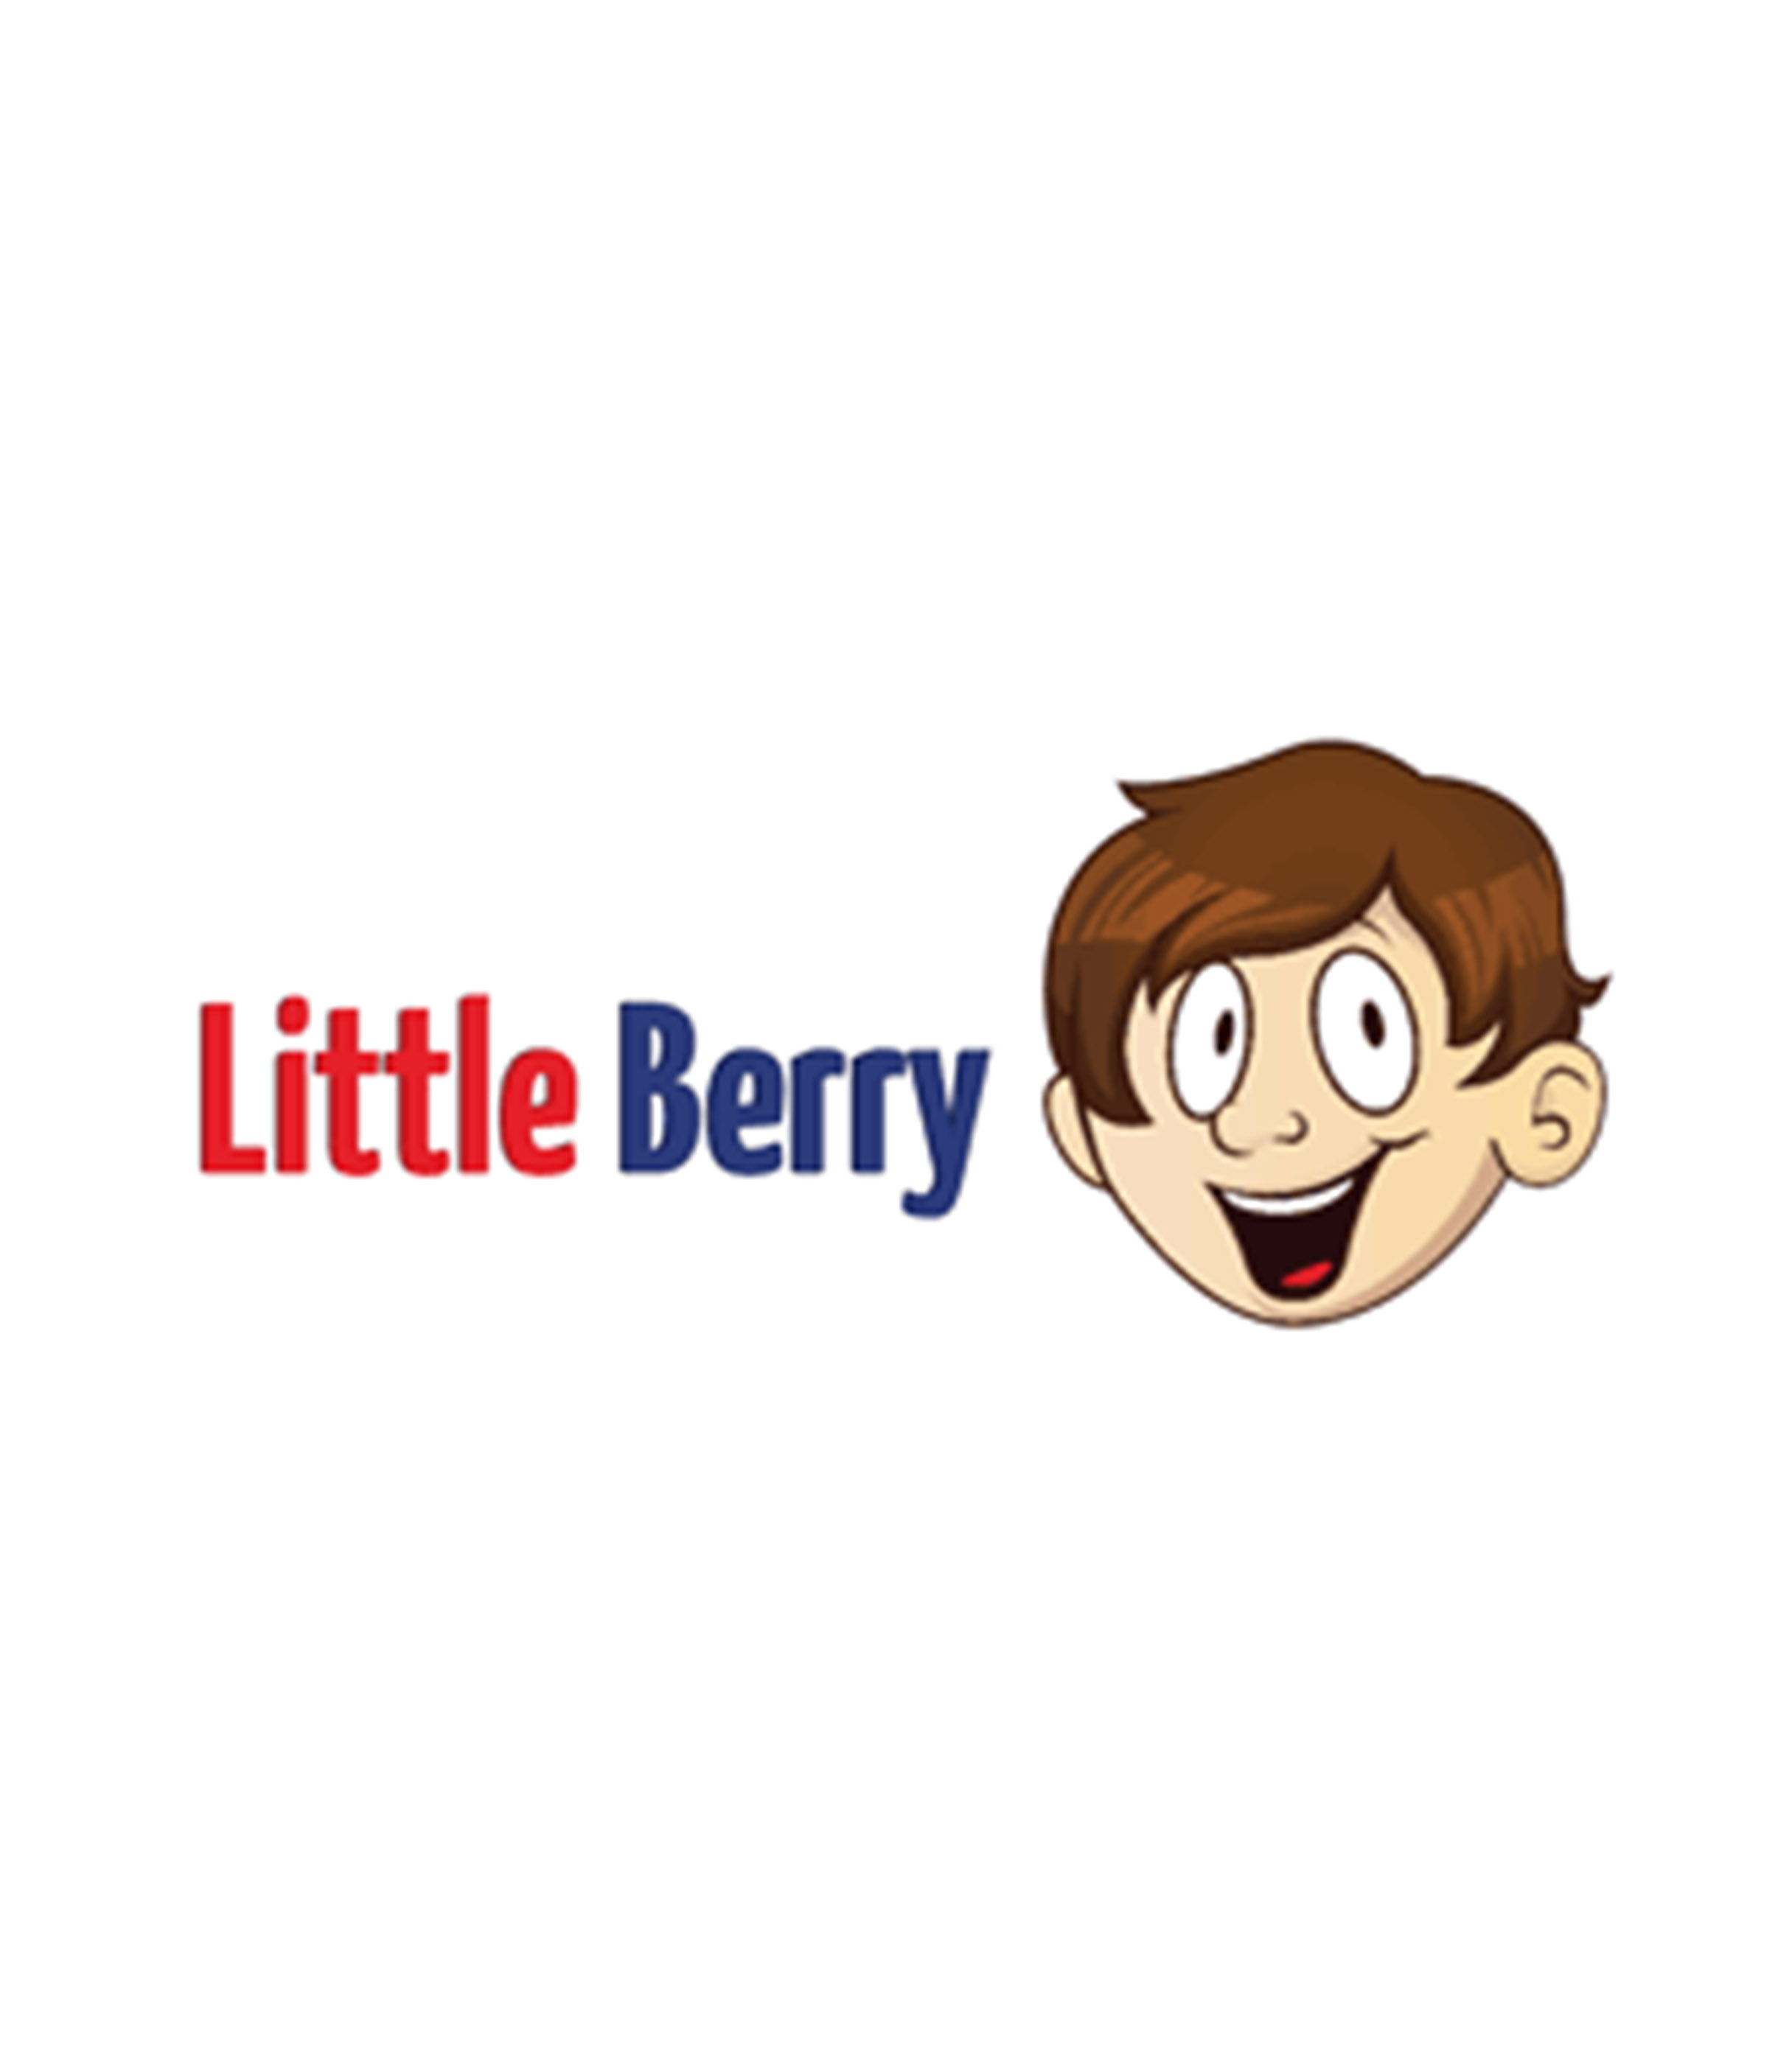 LittleBerry - Pre radosť vašich detí sme tu práve my!